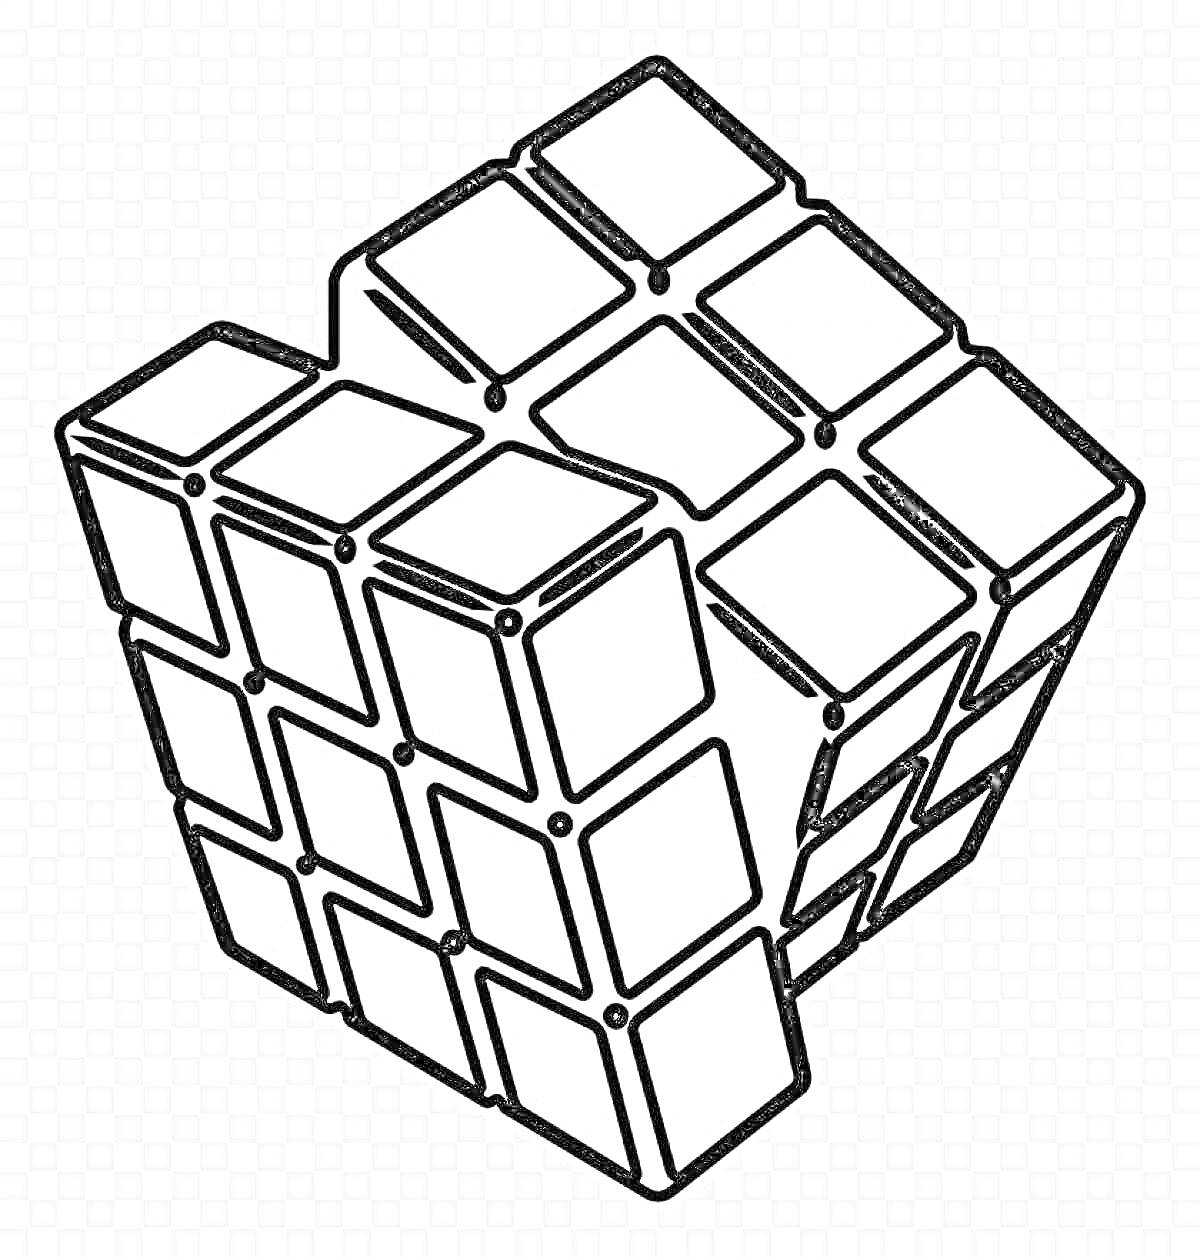 Раскраска Кубик Рубика с видимыми мелкими квадратами на всех сторонах